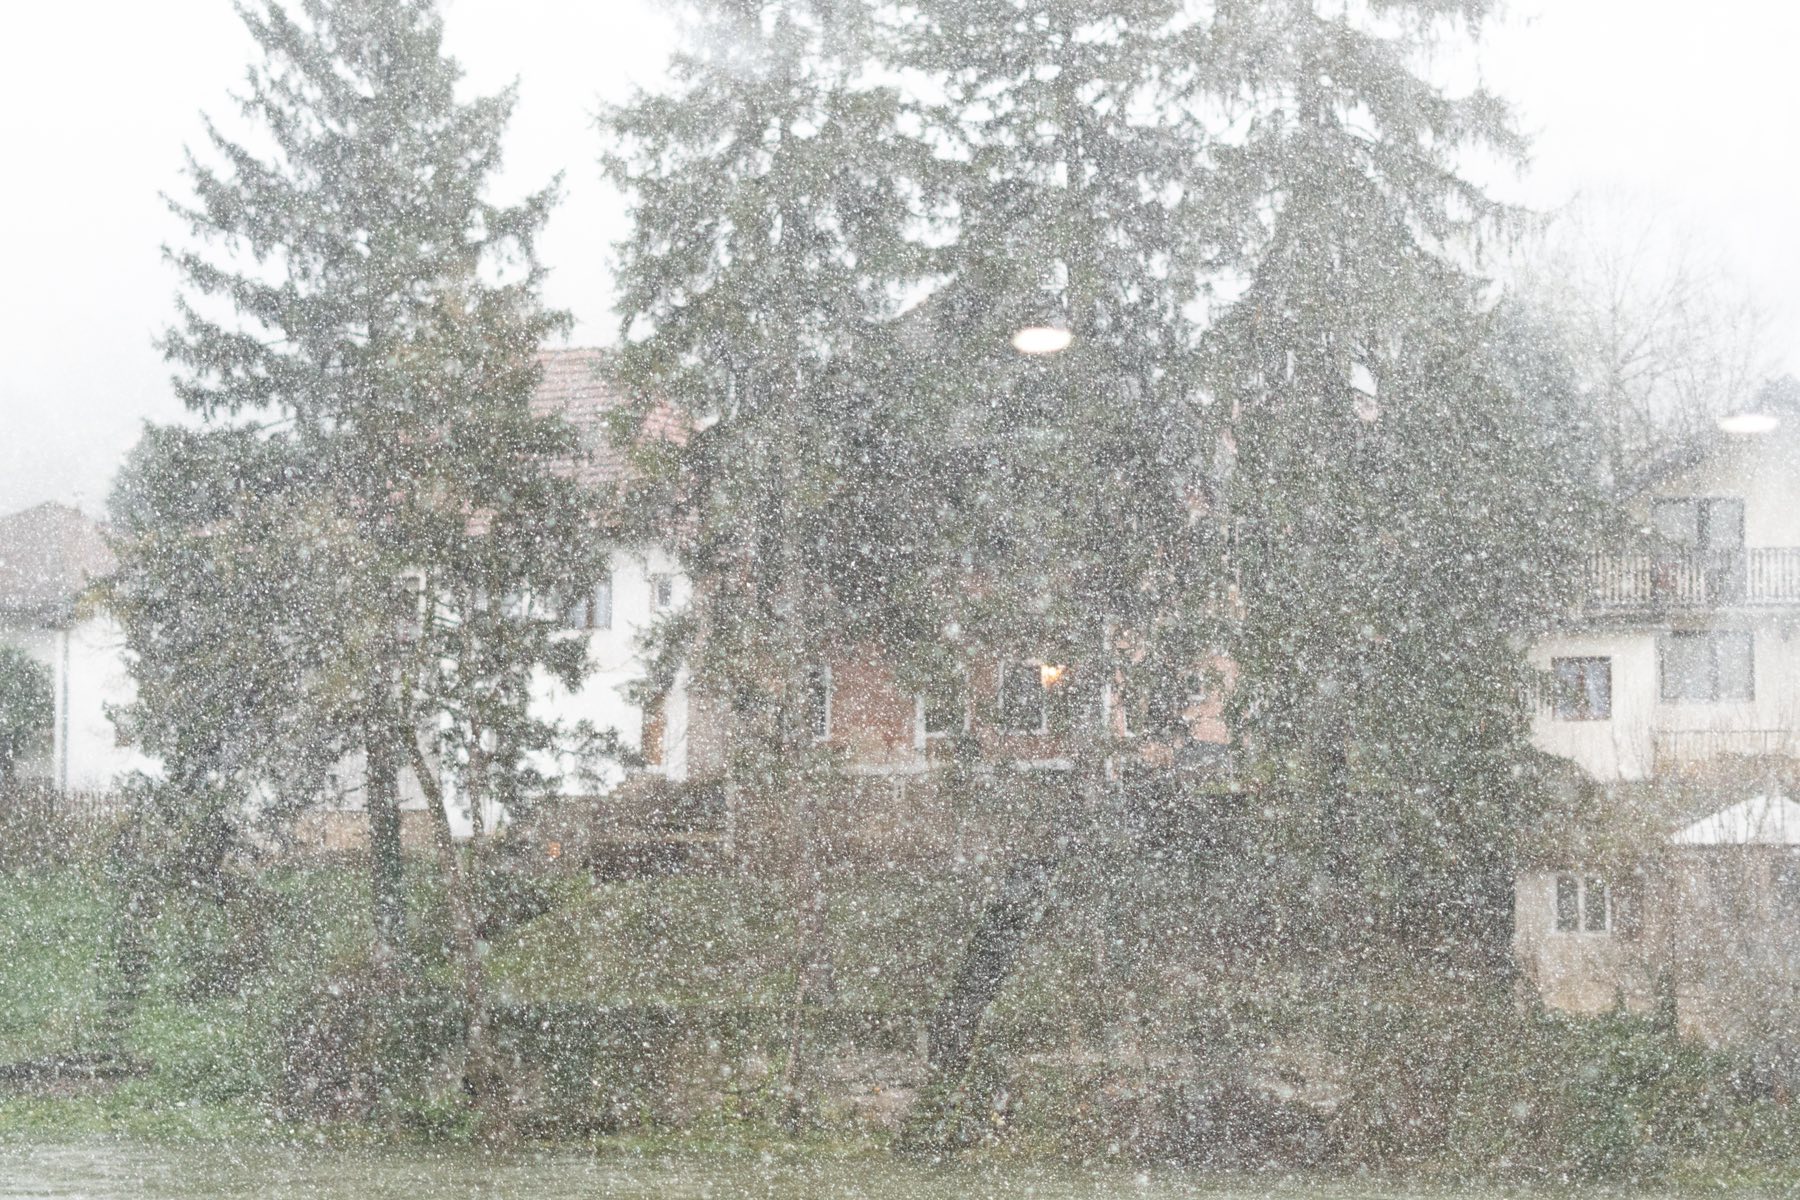 NA SJEVERU OLUJE Pada snijeg u Sloveniji i Hrvatskoj